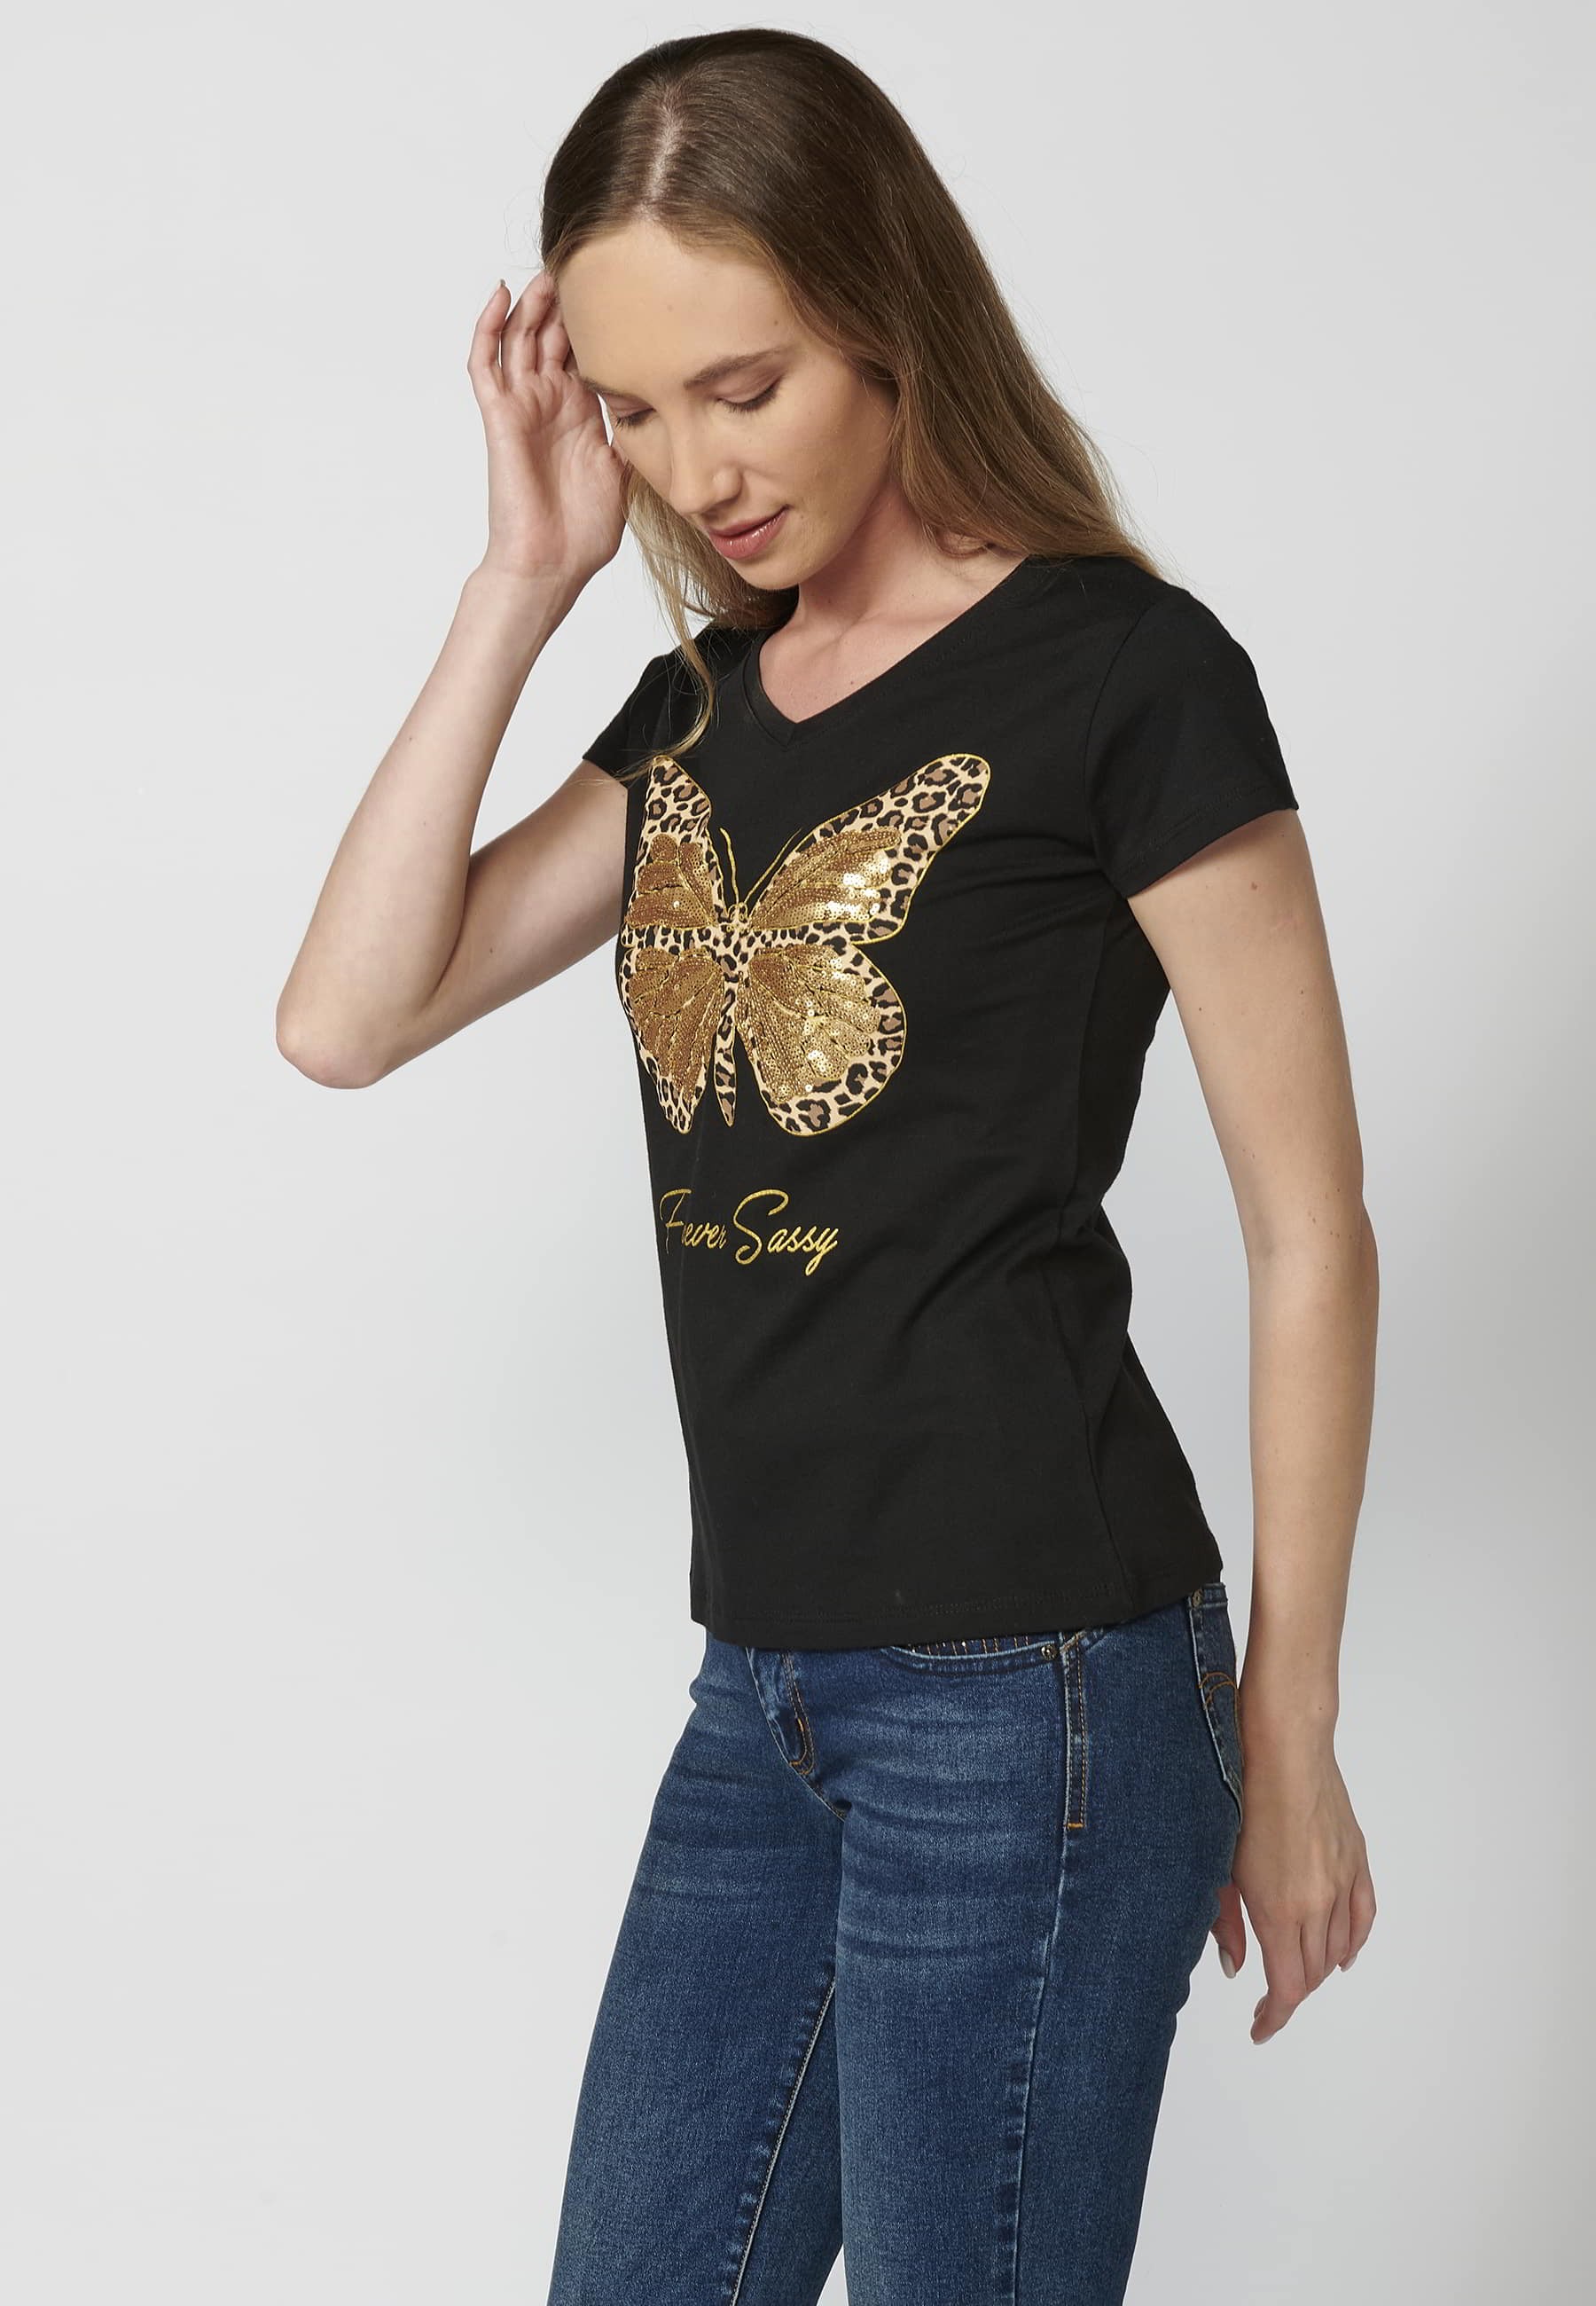 Camiseta de manga corta de algodón cuello redondo estampado frontal mariposa color negro para mujer 2